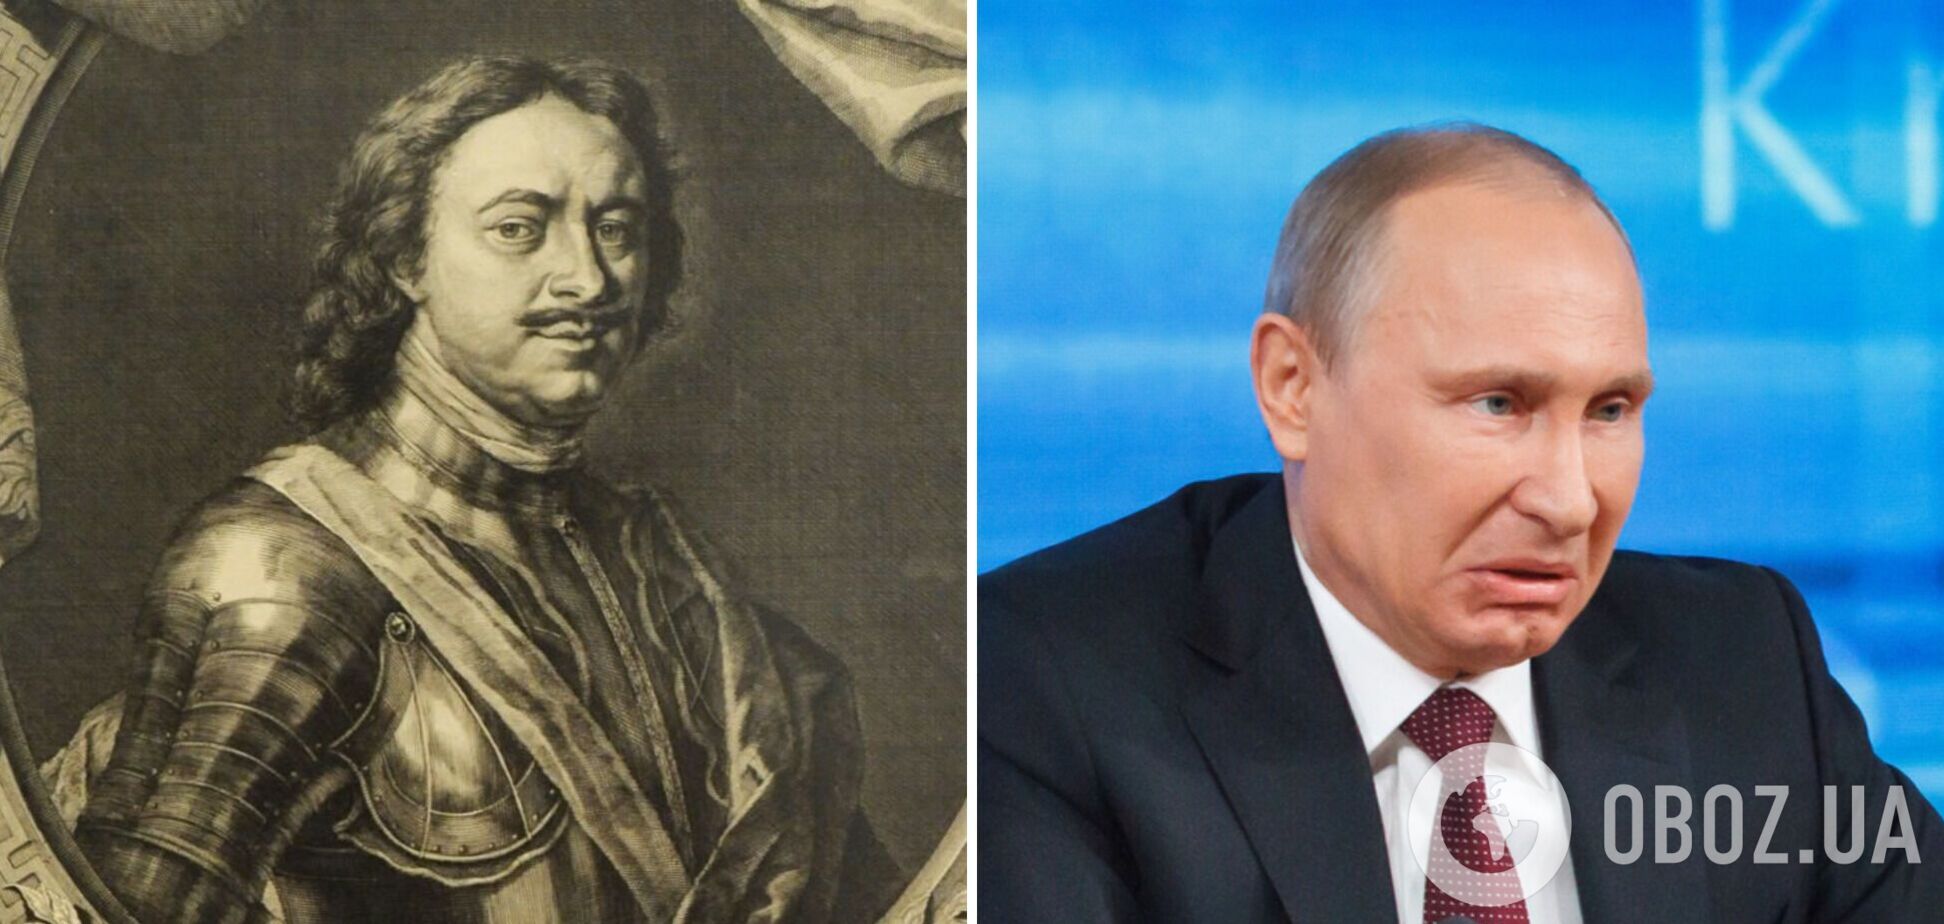 Правда об историческом учителе Путина чудовище Петре I от Льва Толстого